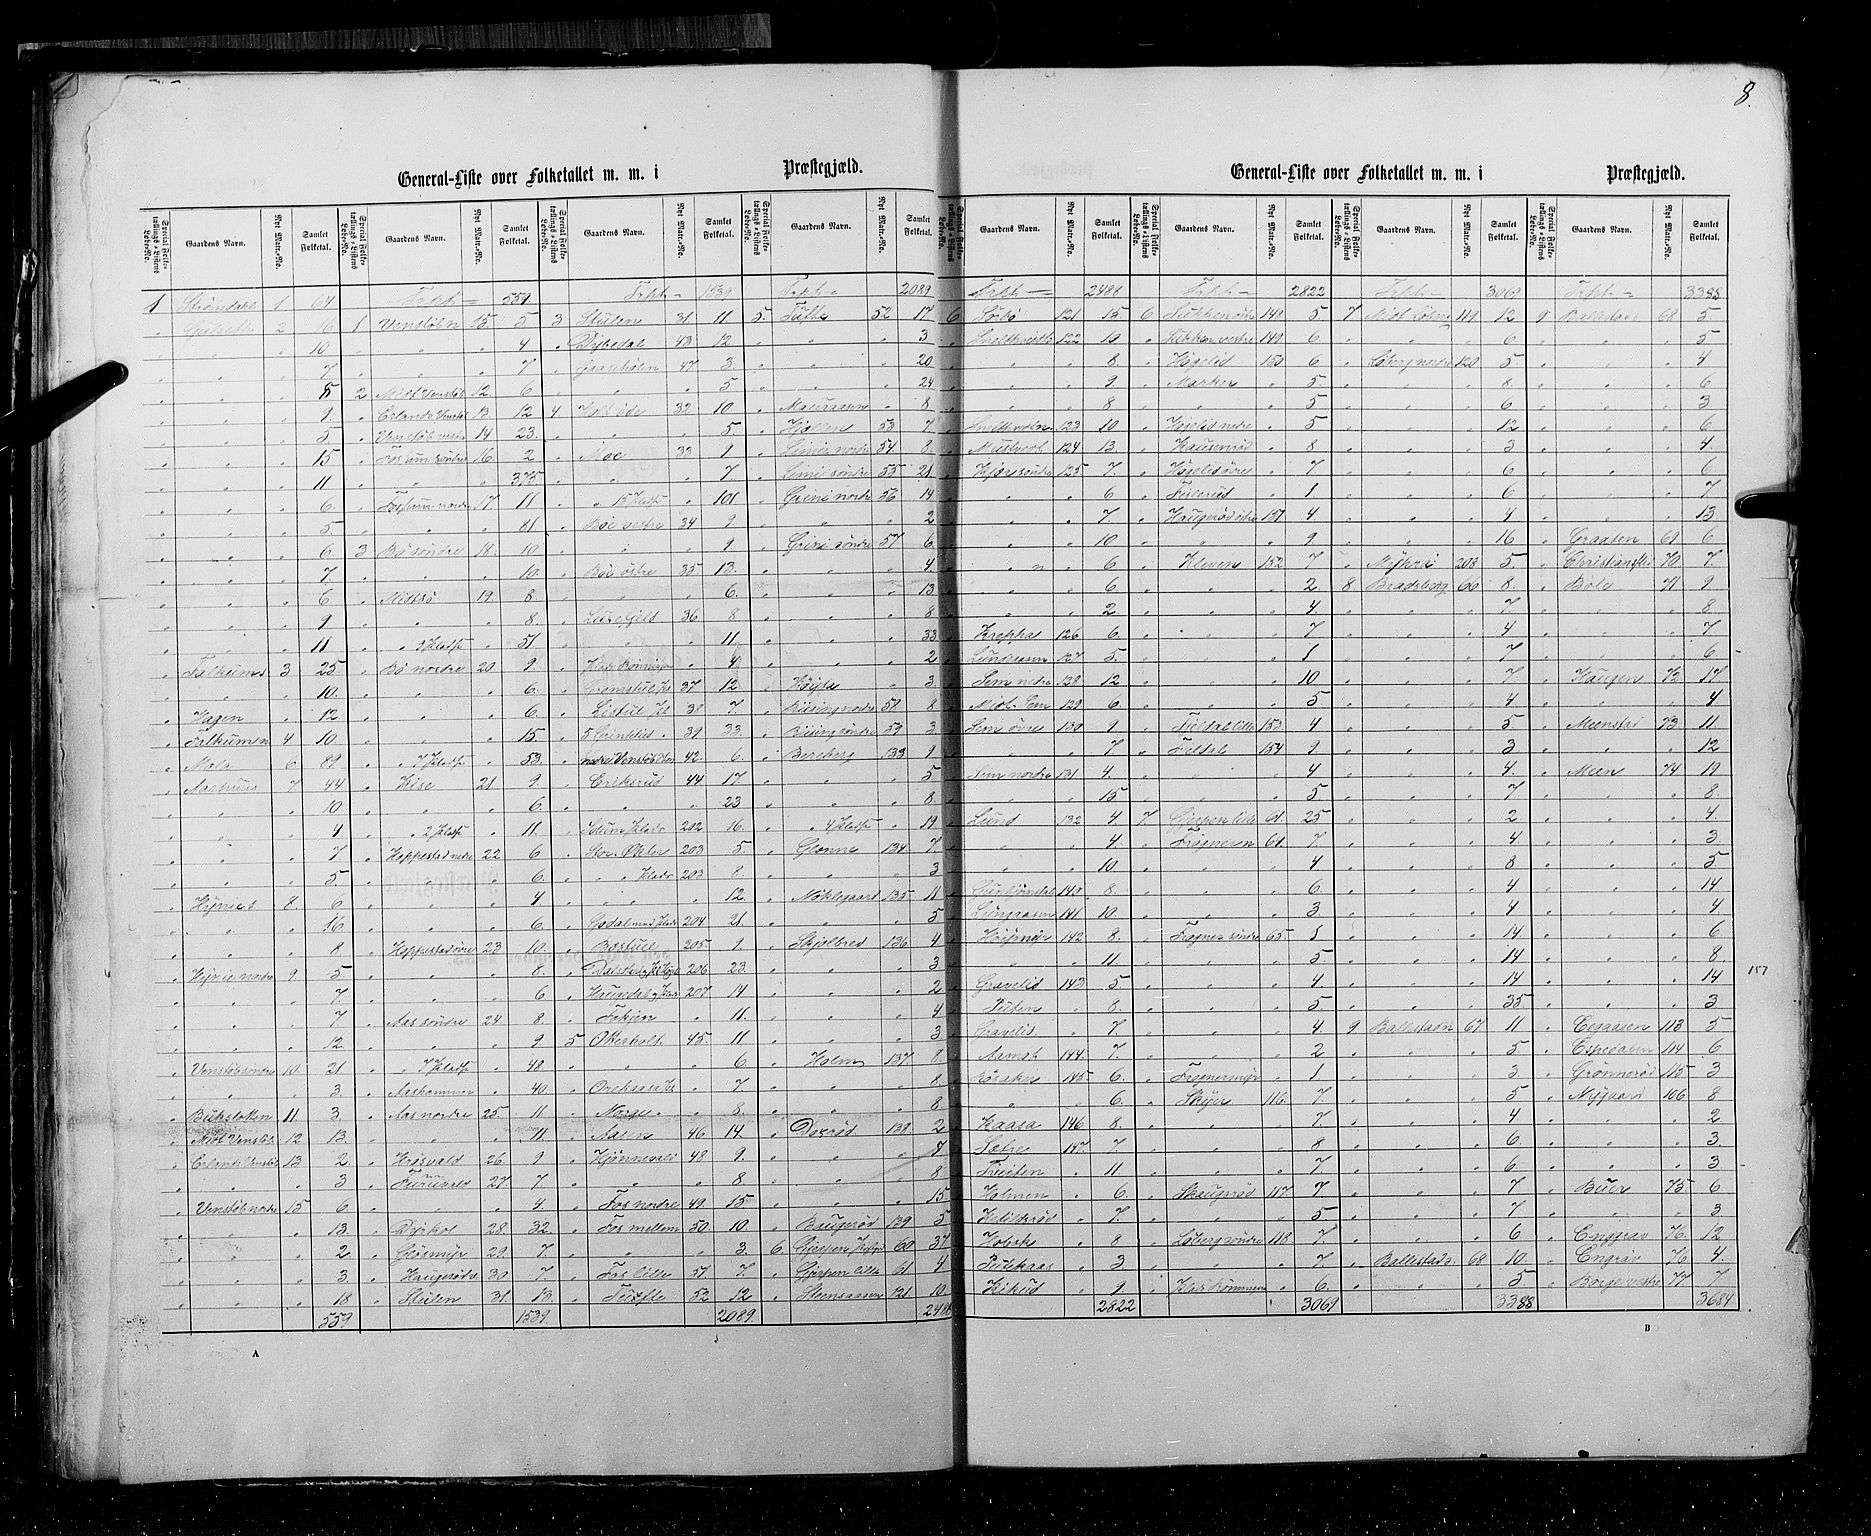 RA, Census 1855, vol. 3: Bratsberg amt, Nedenes amt og Lister og Mandal amt, 1855, p. 8